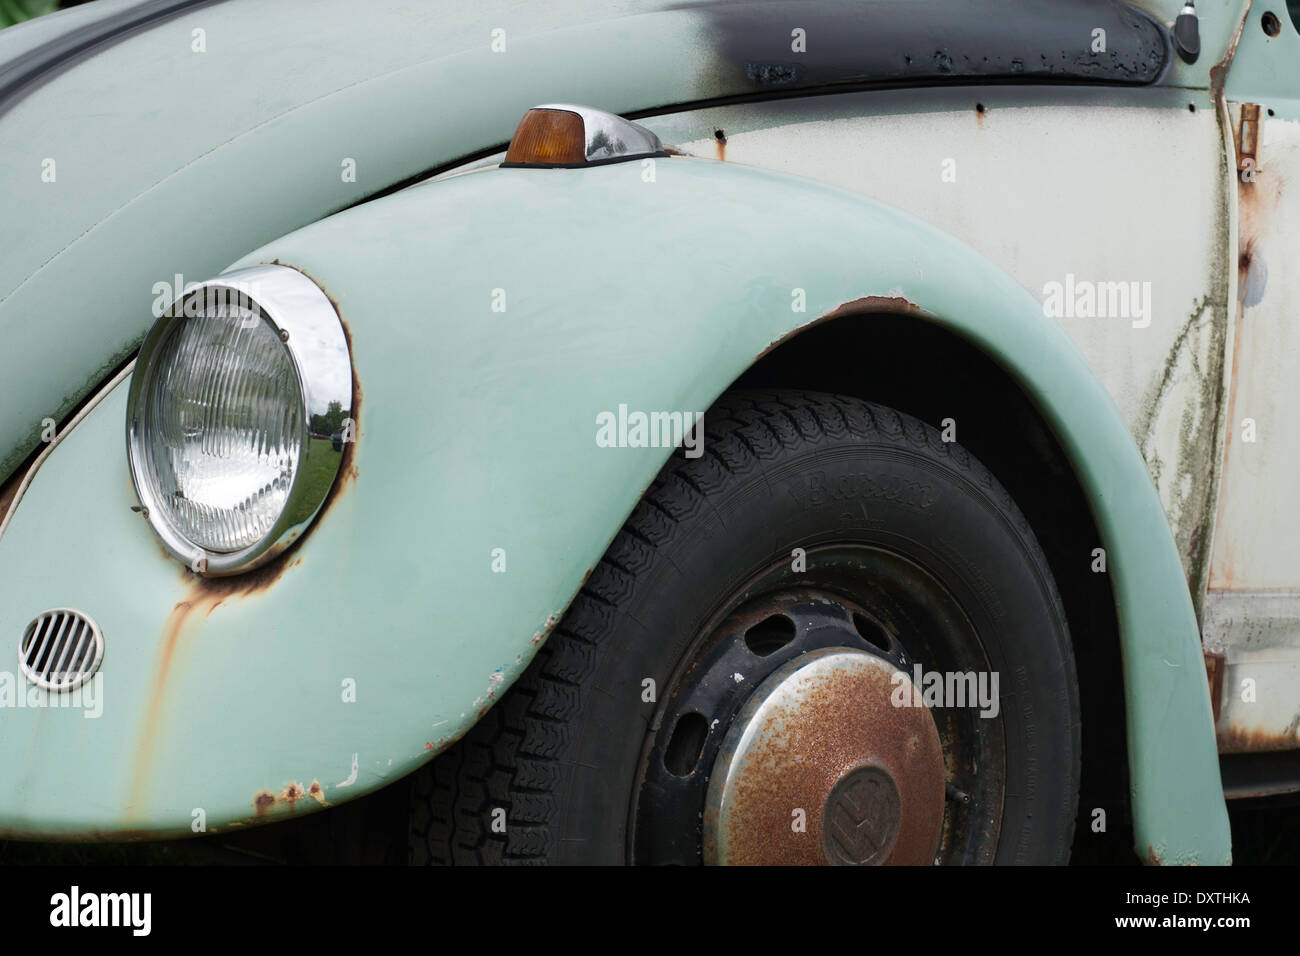 Decaying Volkswagen Beetle Stock Photo